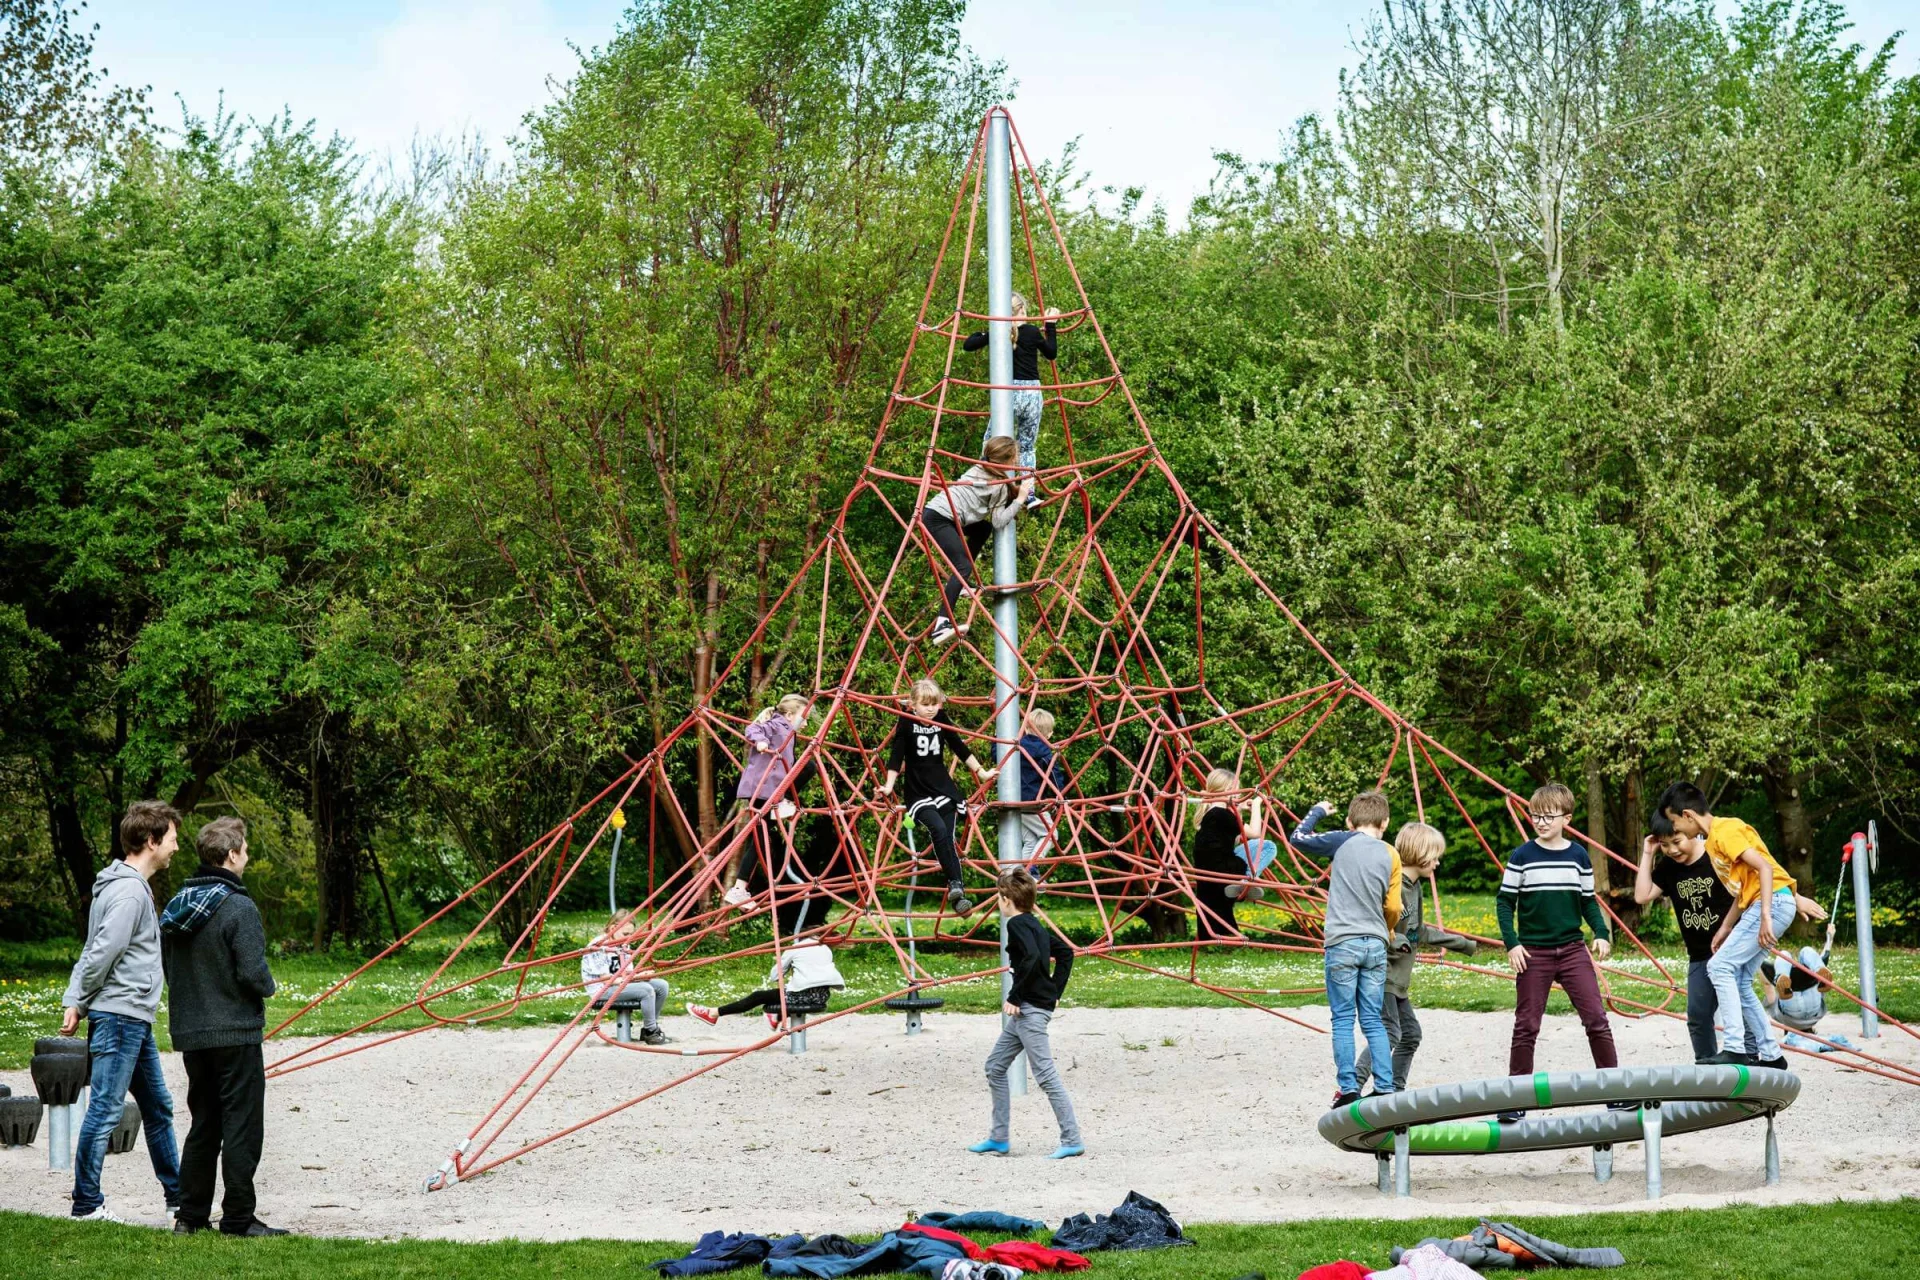 一群人在游乐场的金字塔形攀爬结构上玩耍